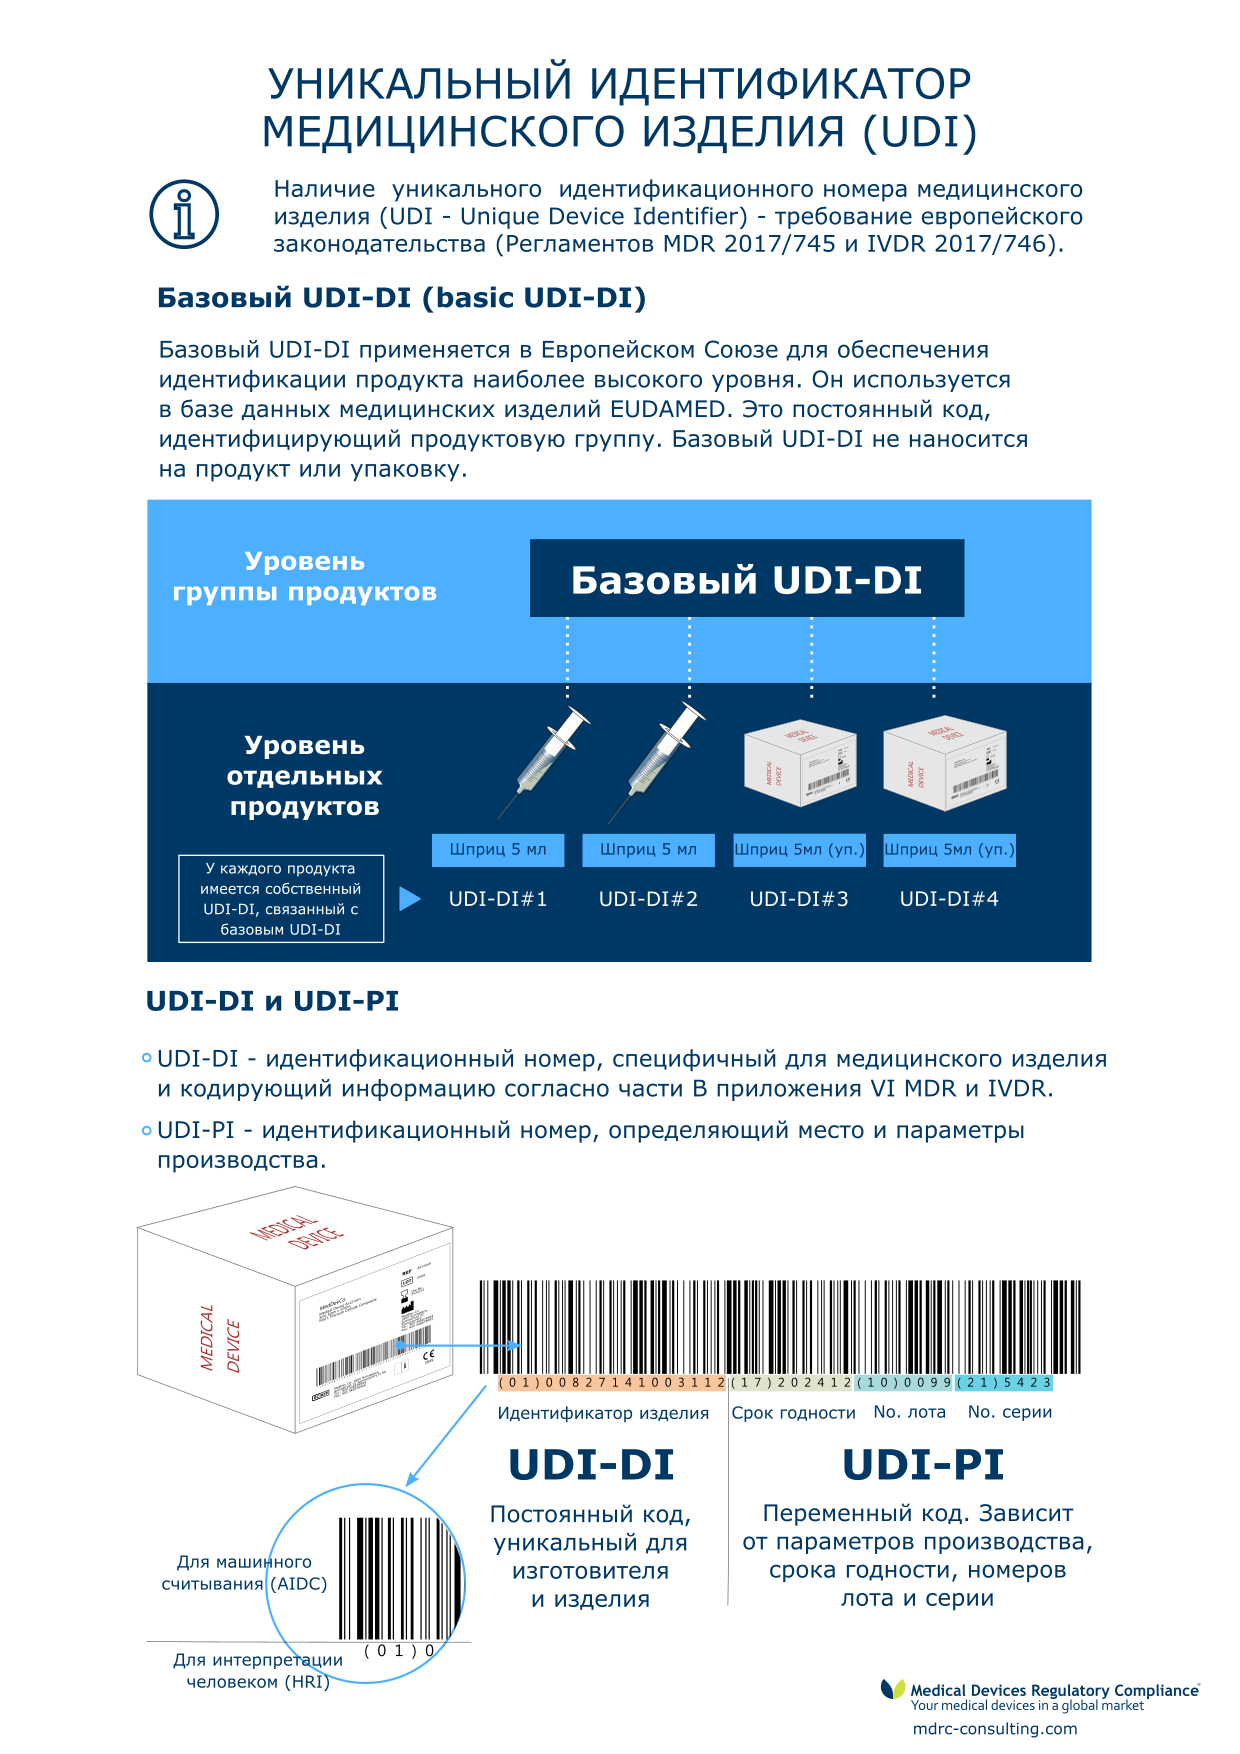 UDI - Unique Device Identifier: infographic